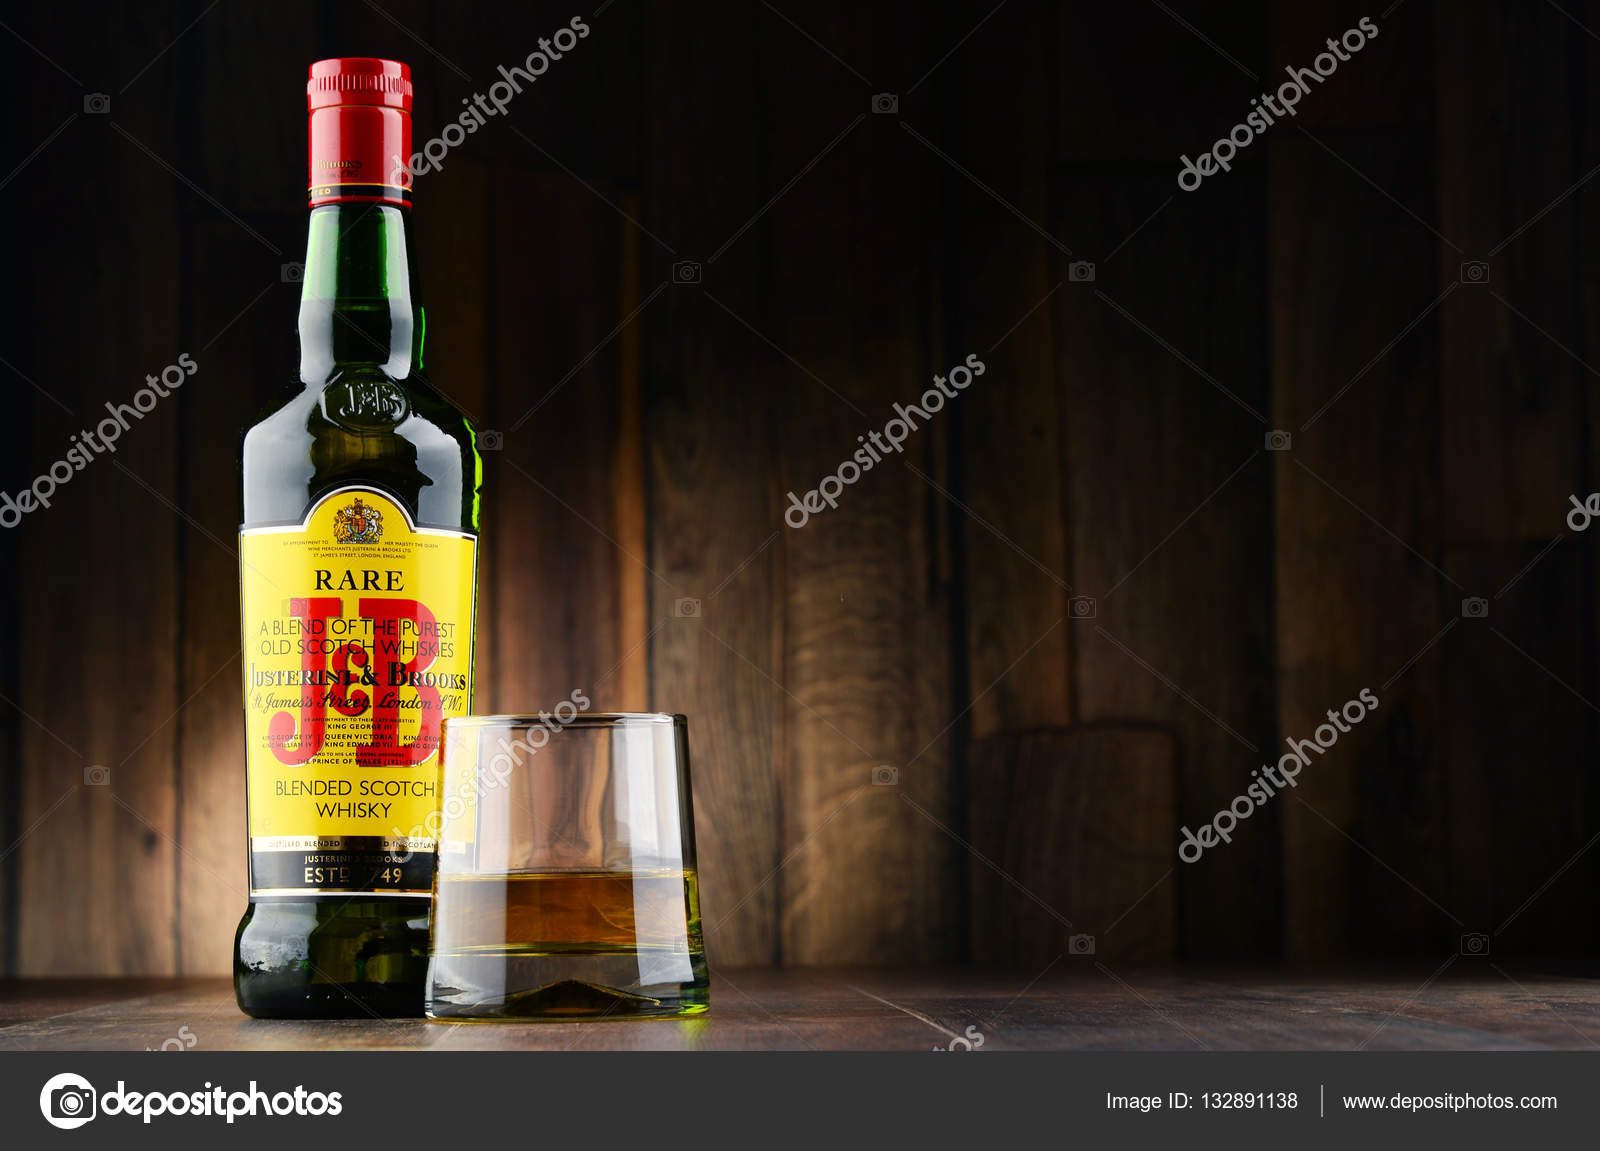 Buy J&b Rare Blended Scotch Whisky Online